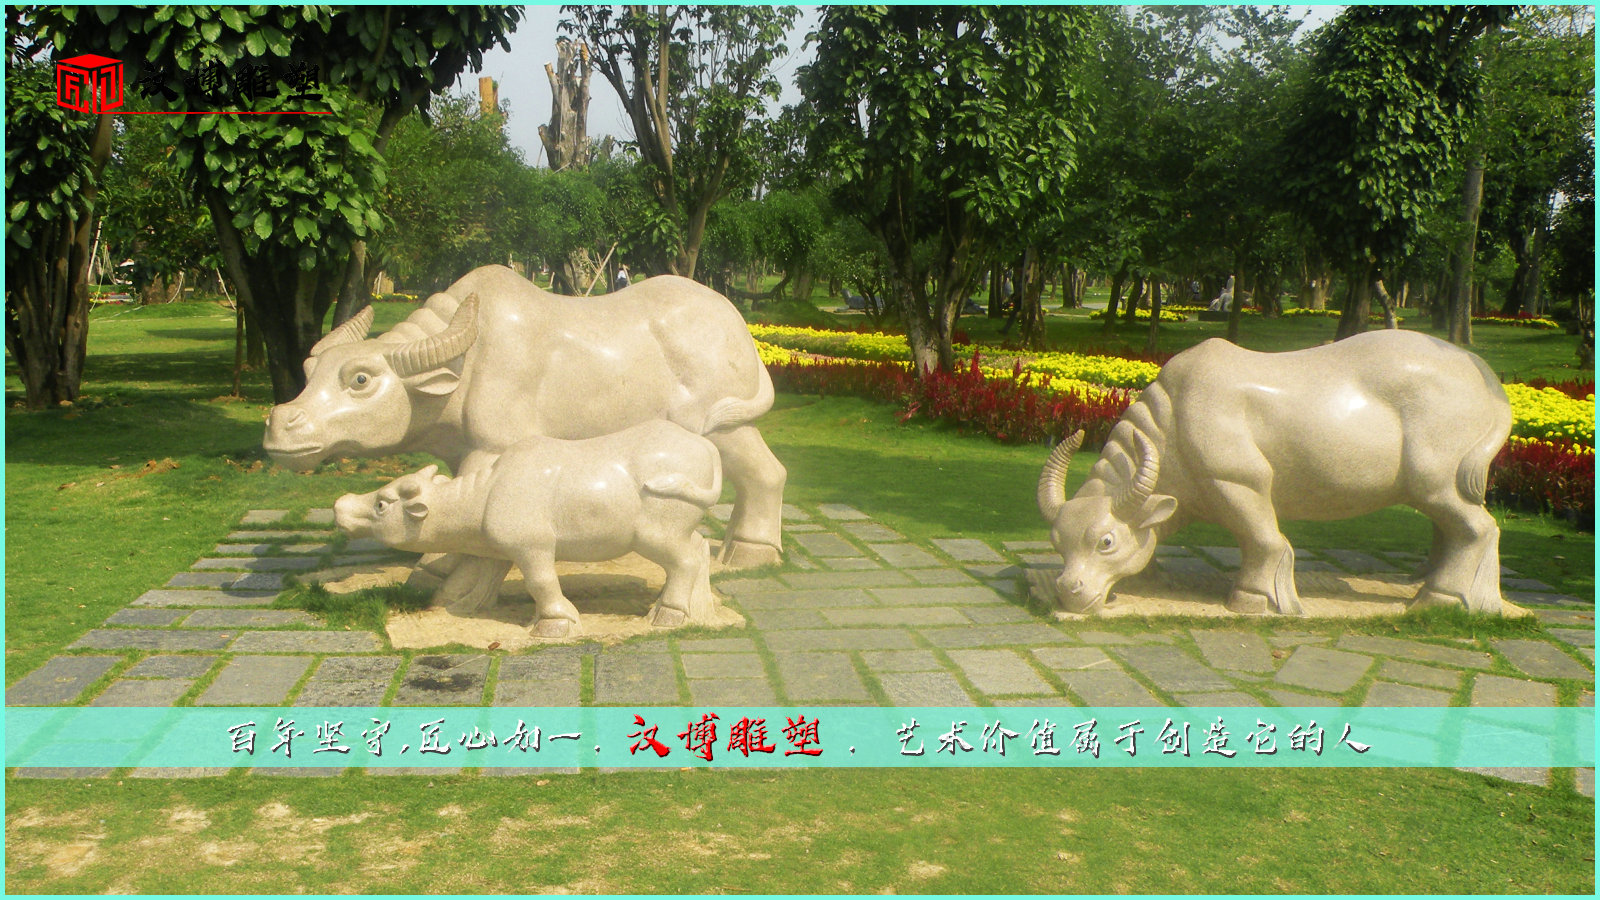 石雕牛雕像,传统文化雕塑,景观公园雕像